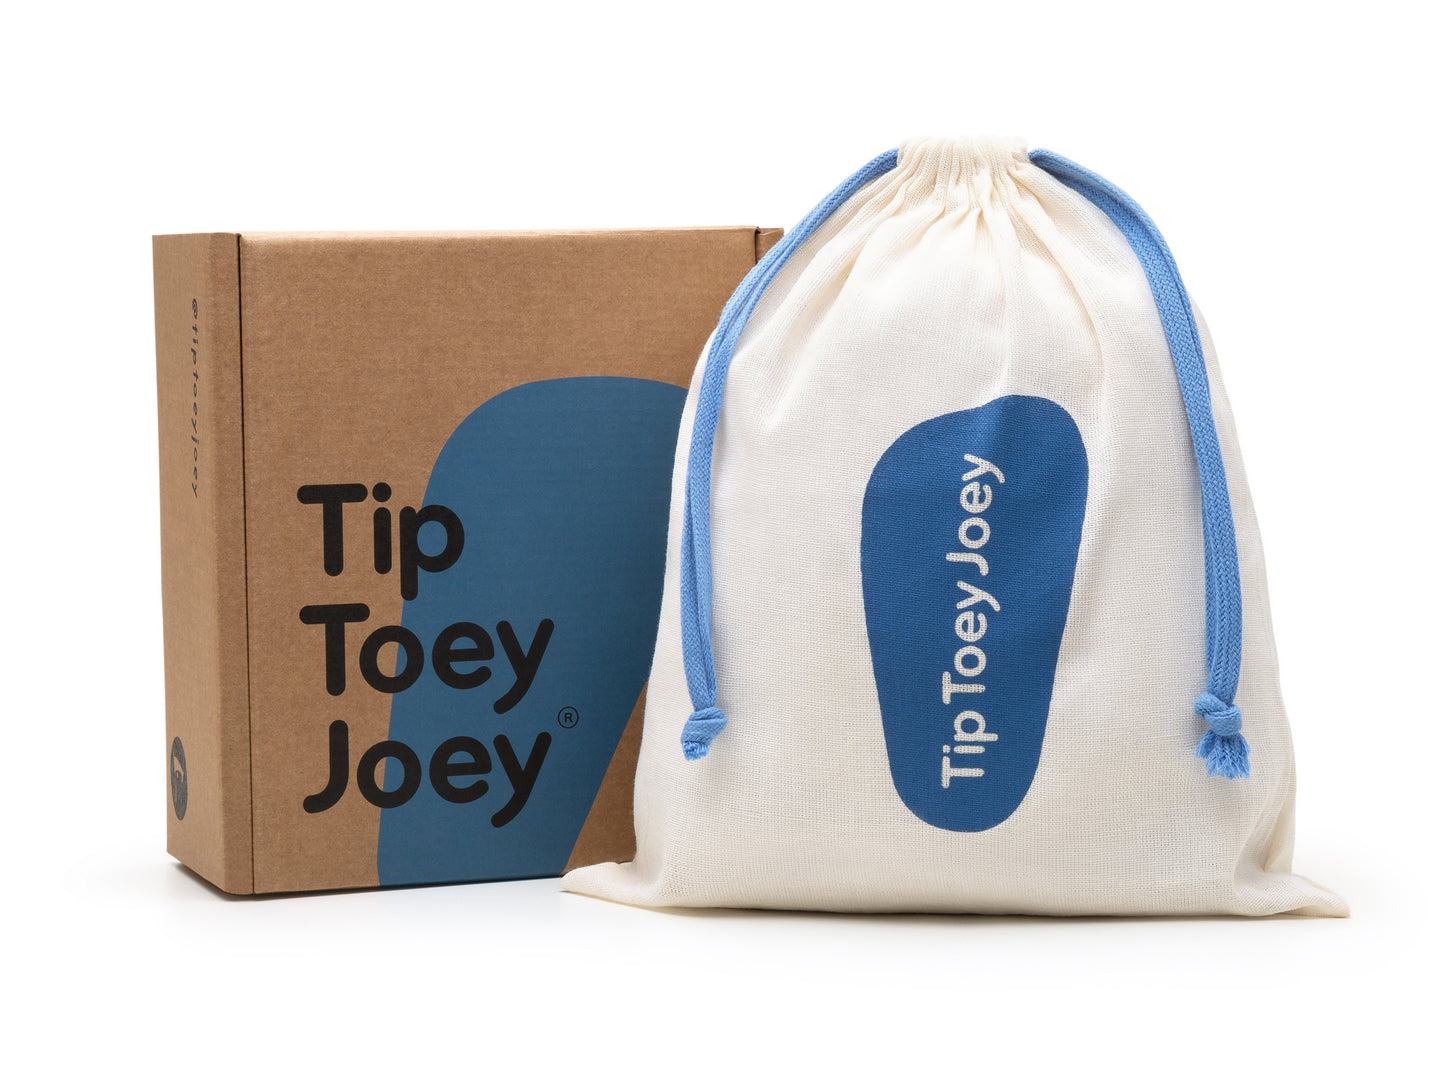 Tip Toey Joey - Ramp Colors Tapioca